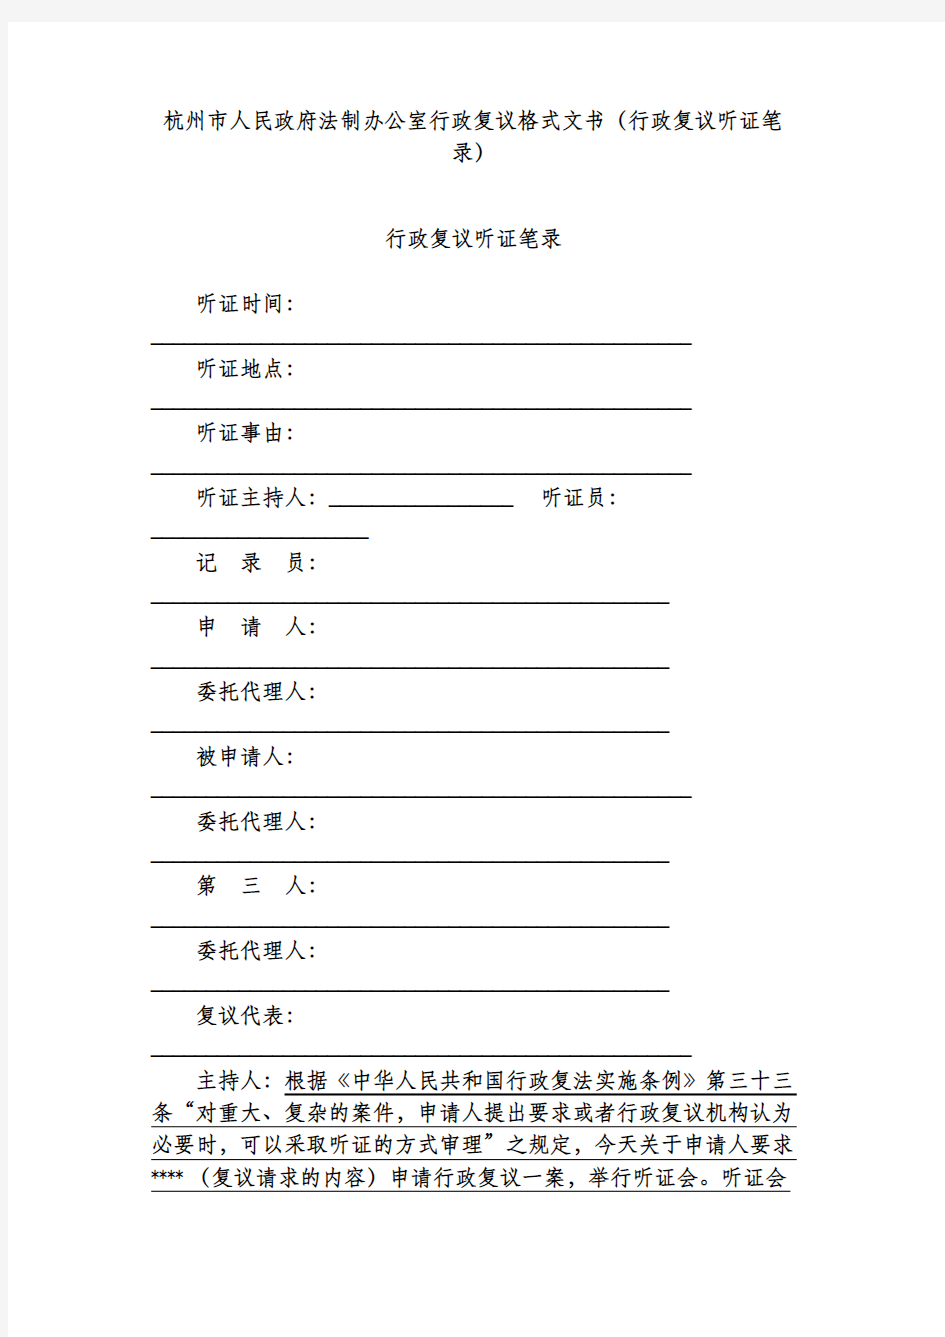 杭州市人民政府法制办公室行政复议格式文书(行政复议听证笔录)